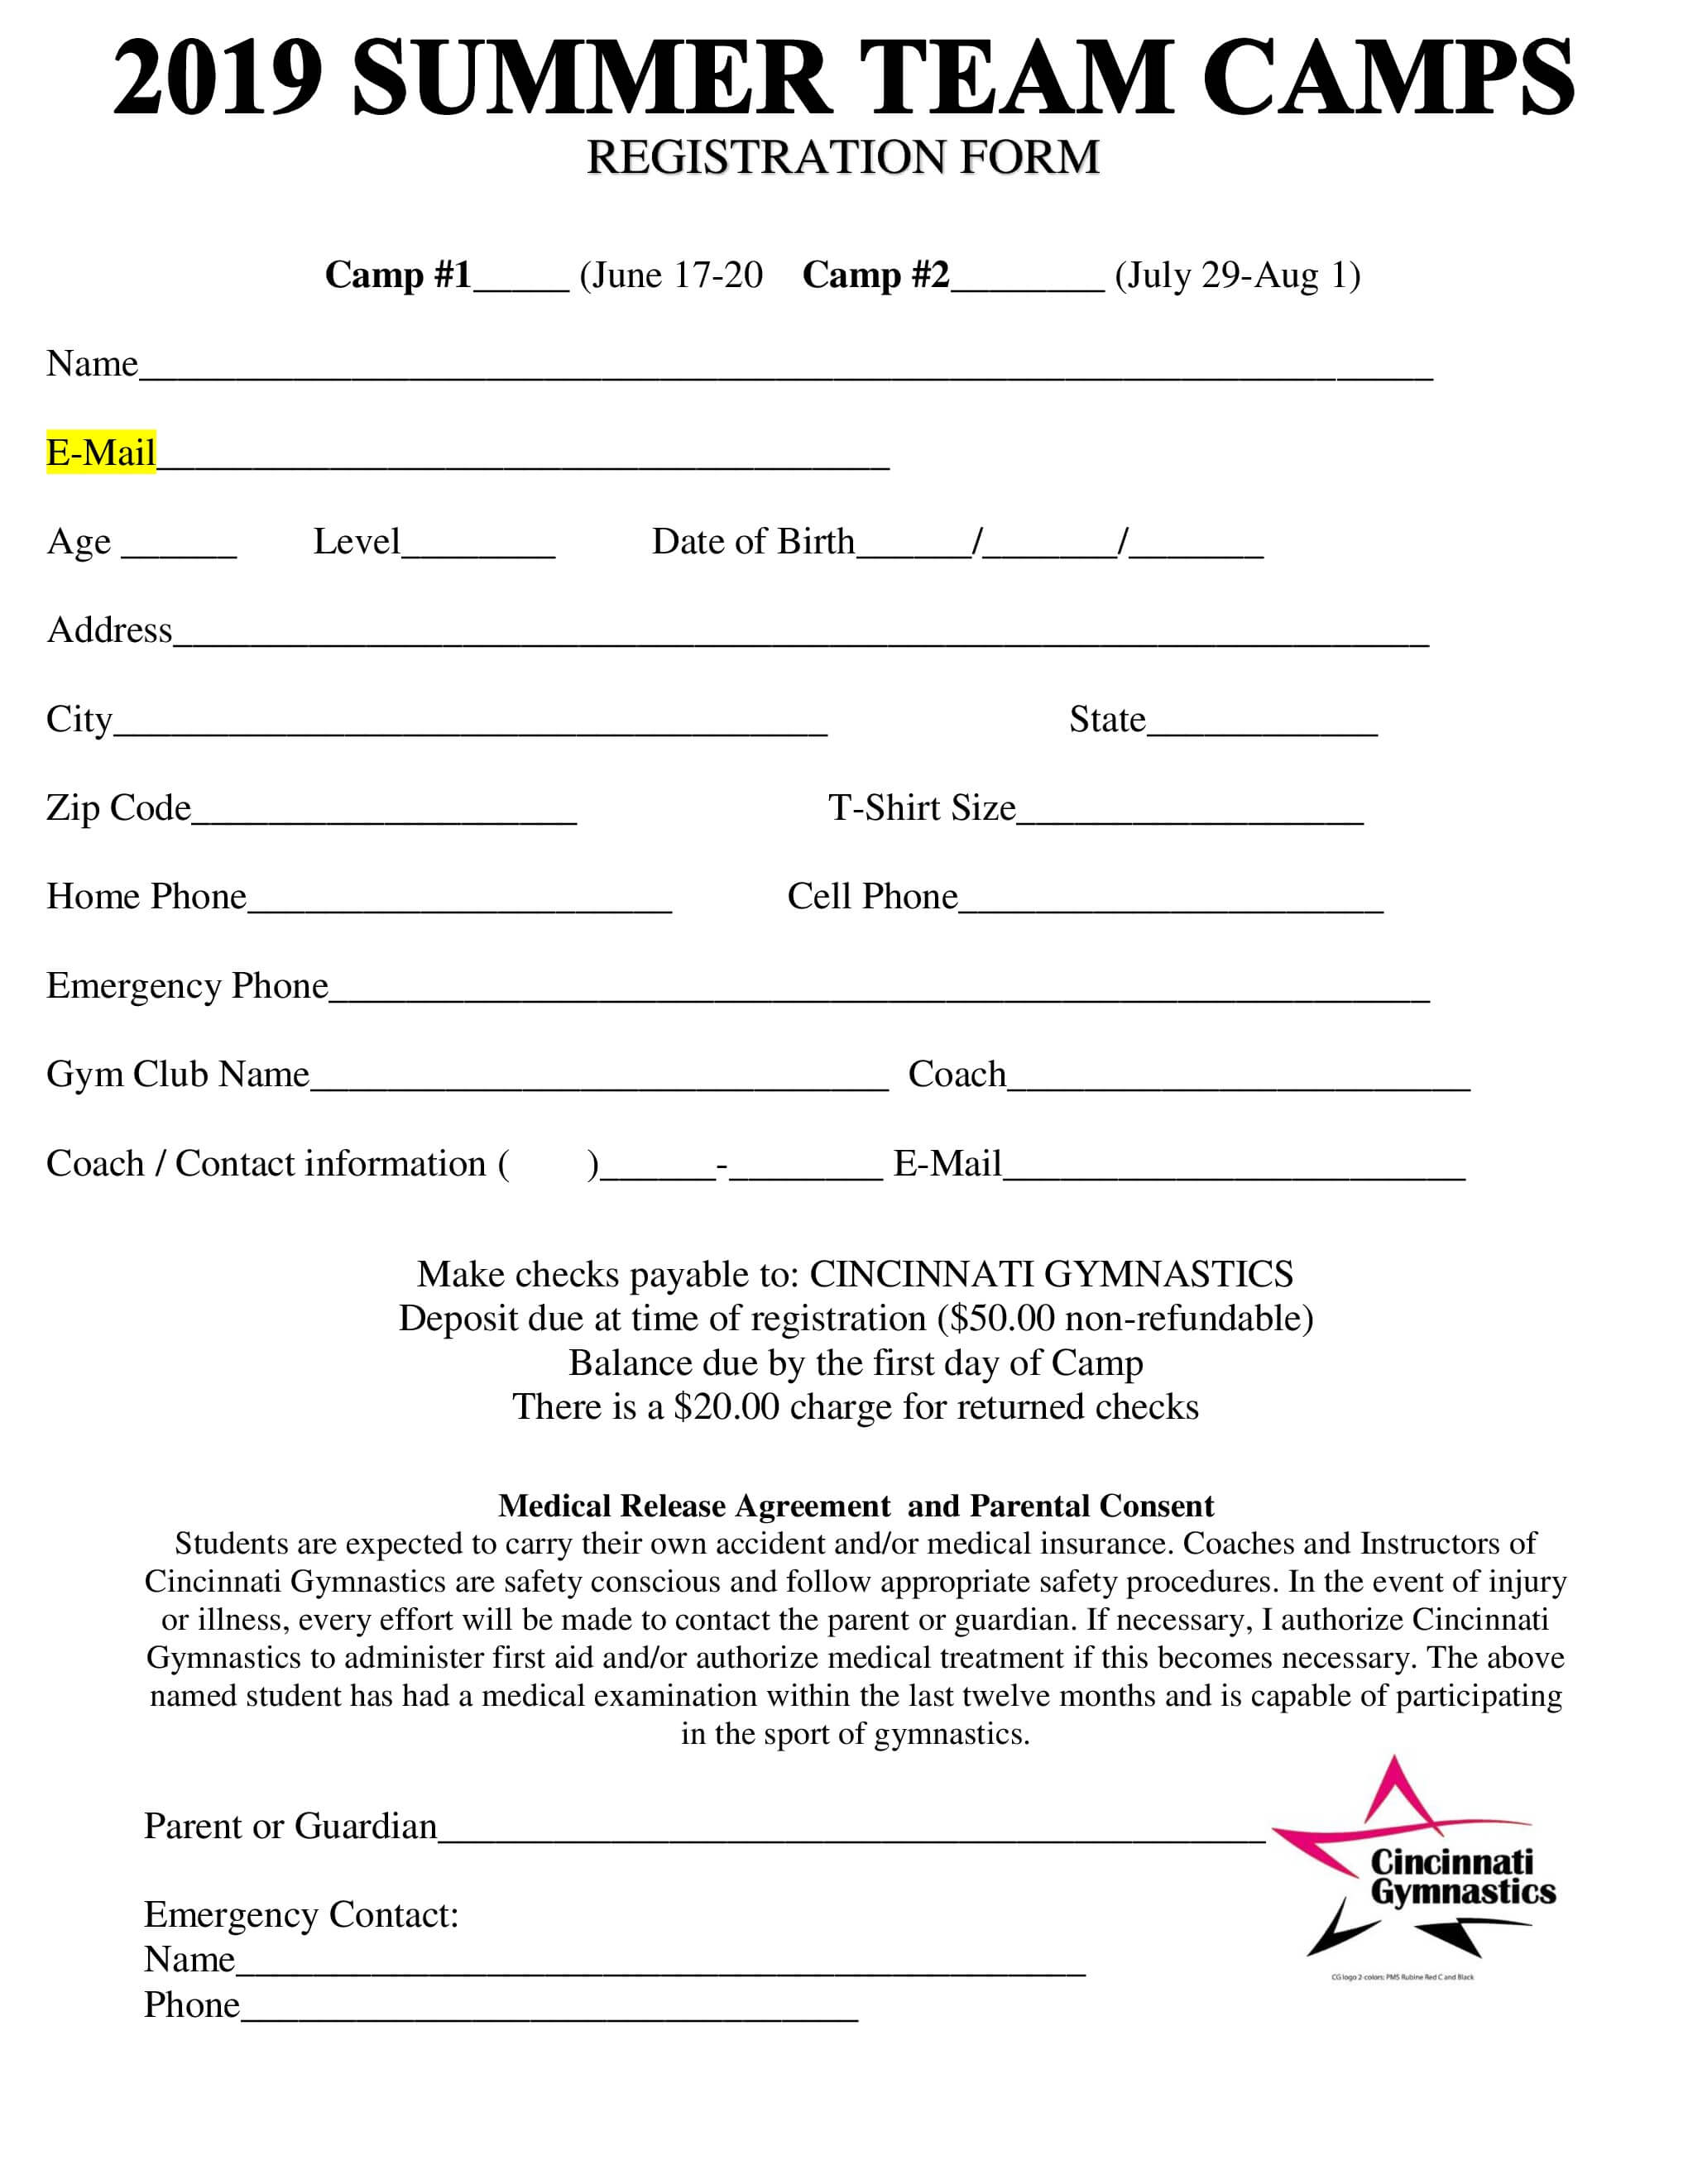 Registration Form Sample Html Uif Forms Online School Doc For Camp Registration Form Template Word